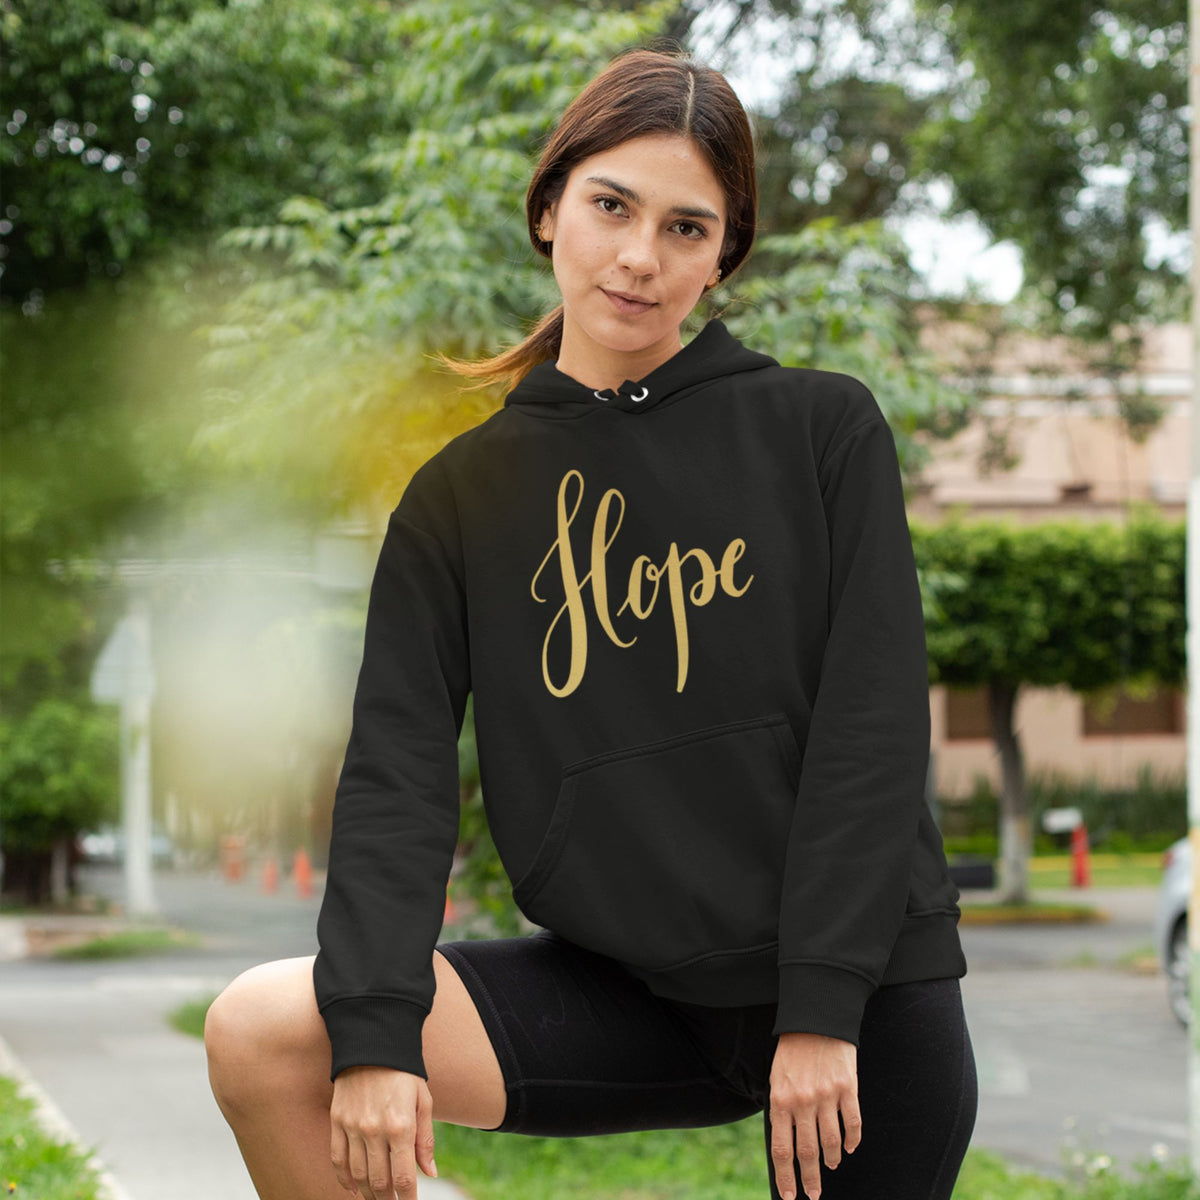     hope-black-printed-unisex-hoodie-gogirgit-com